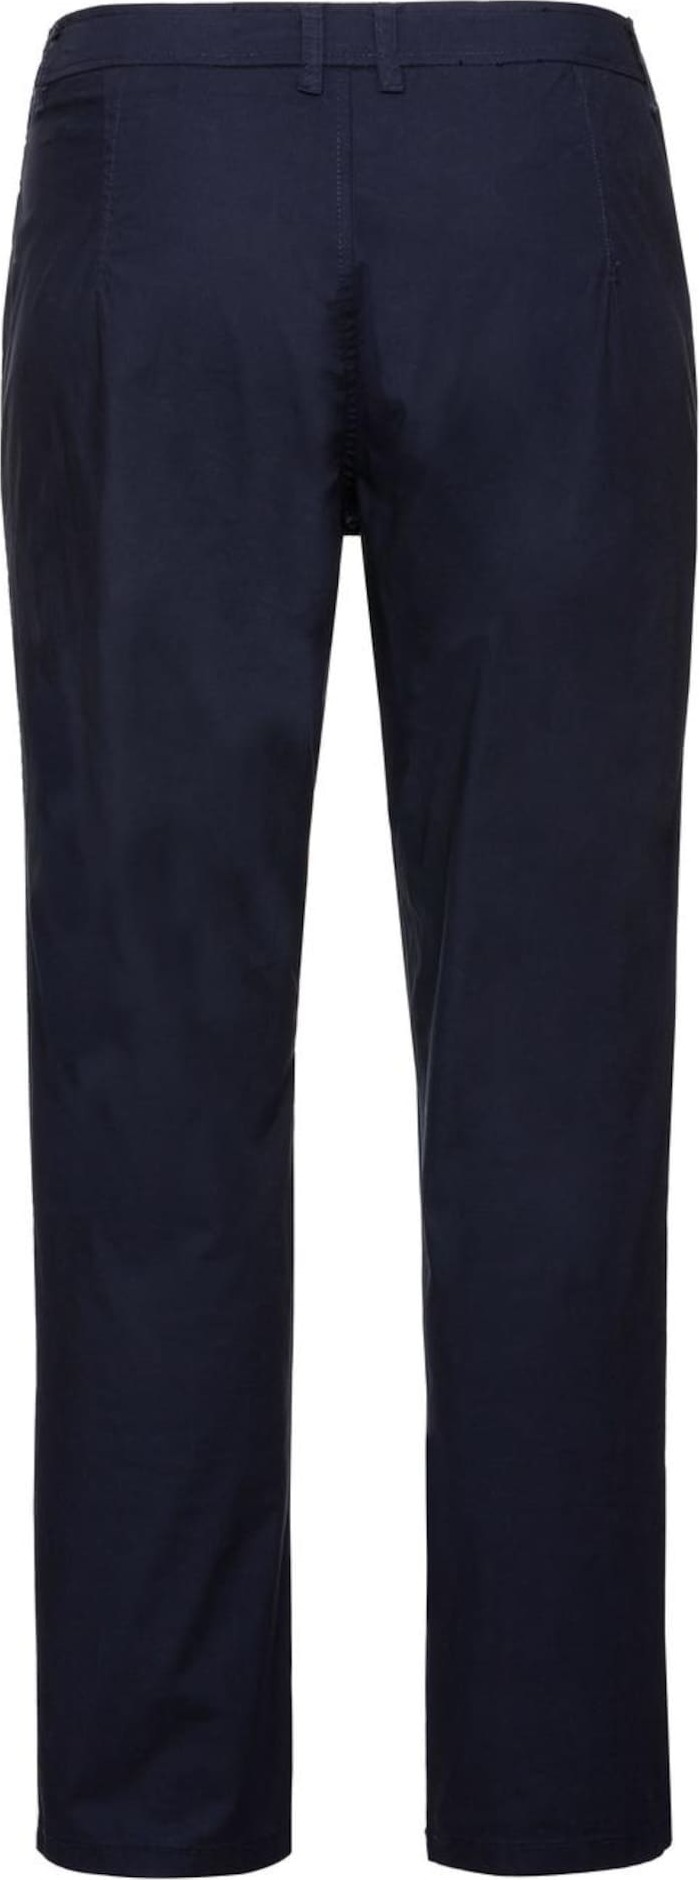 SHEEGO Chino kalhoty marine modrá